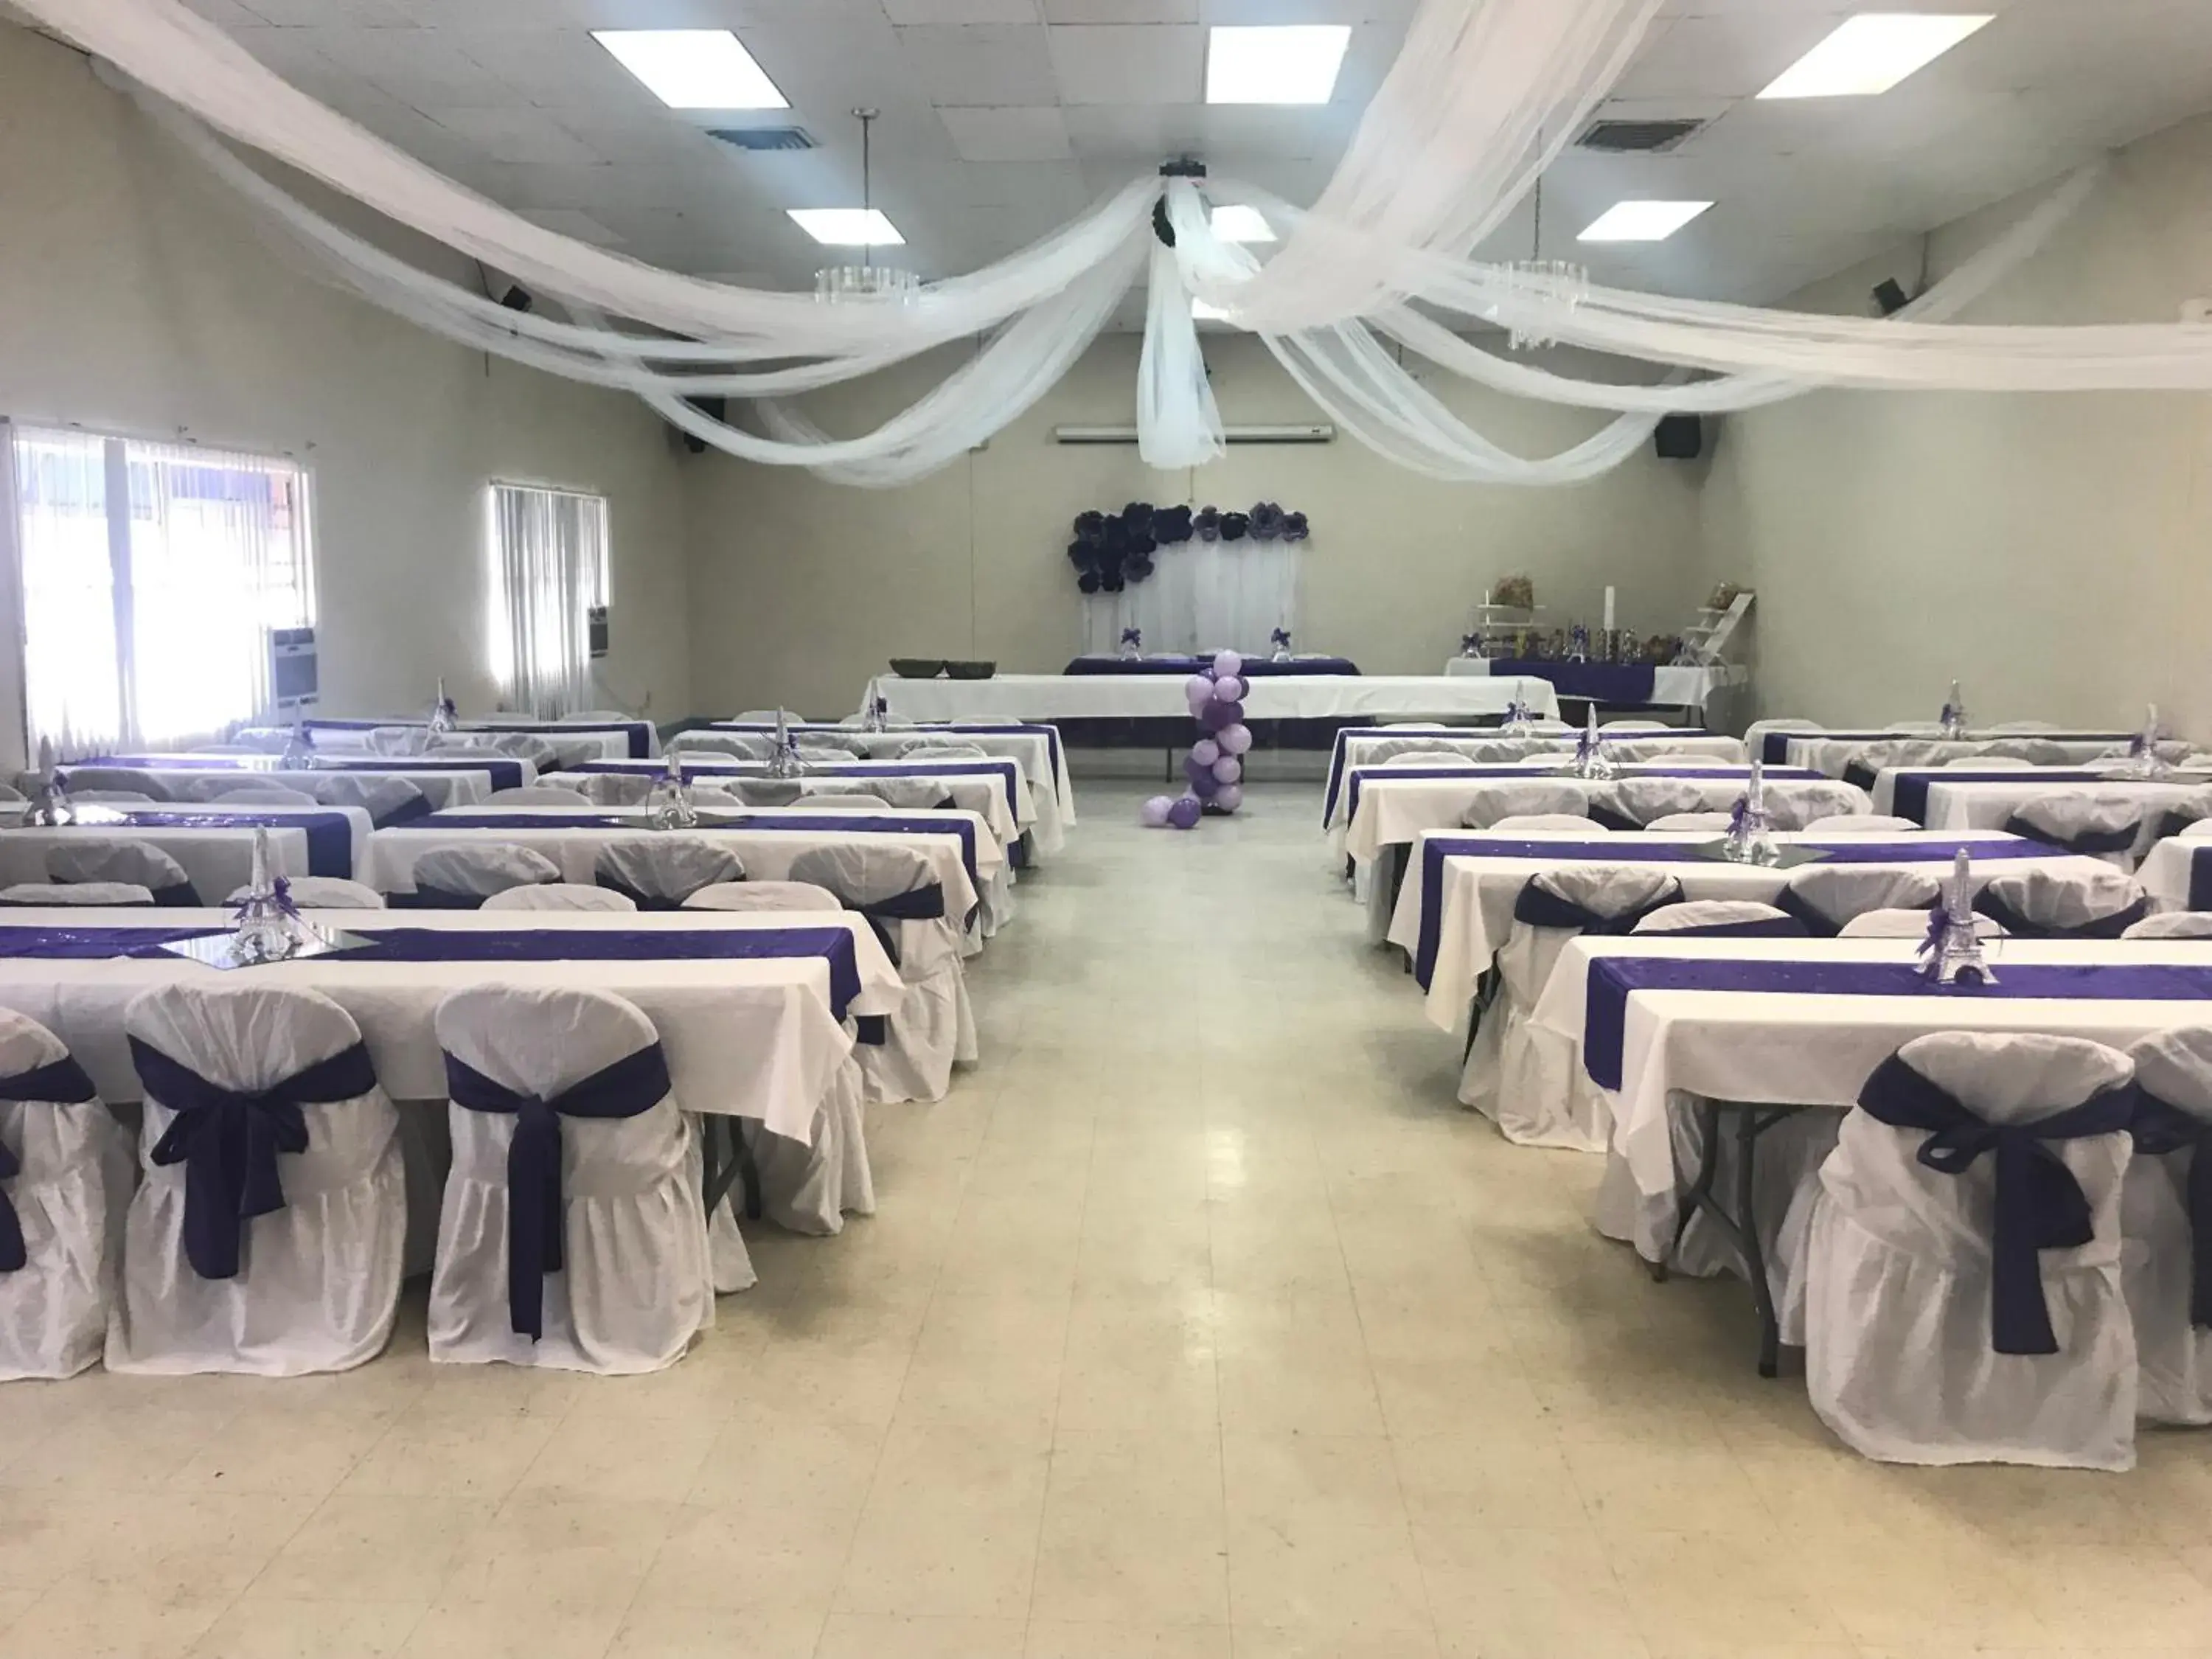 Banquet/Function facilities, Banquet Facilities in Super Lodge Motel El Paso